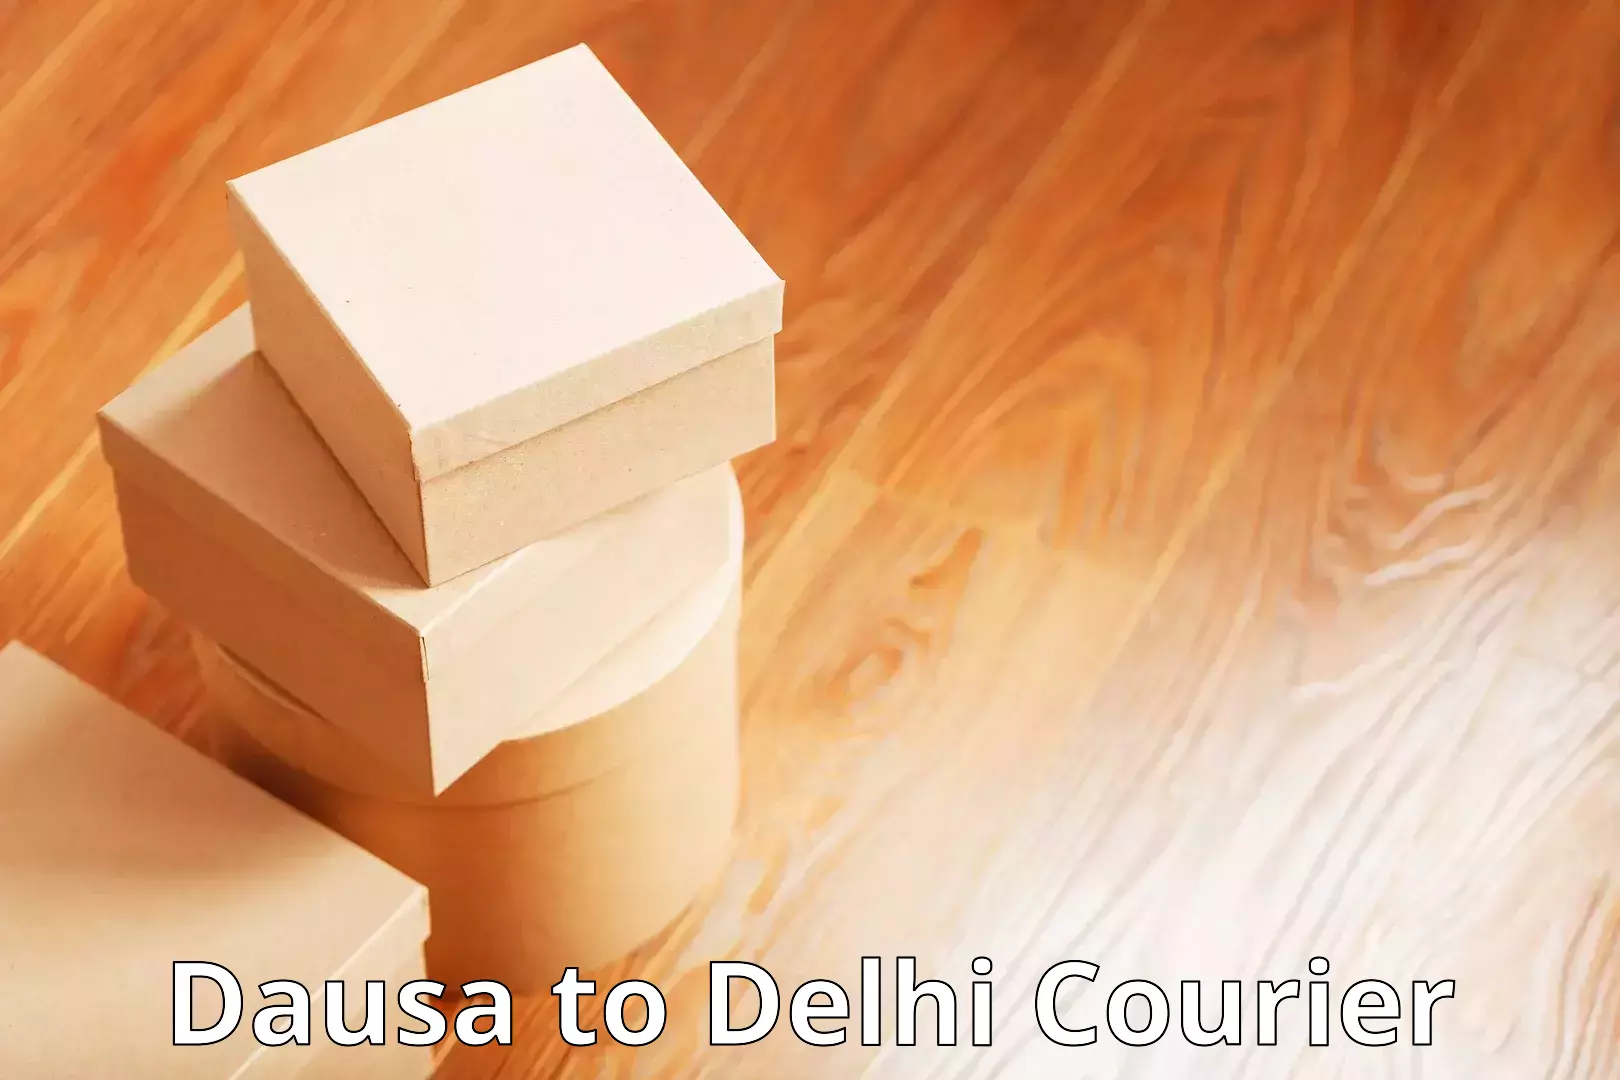 Customer-friendly courier services Dausa to Jamia Millia Islamia New Delhi